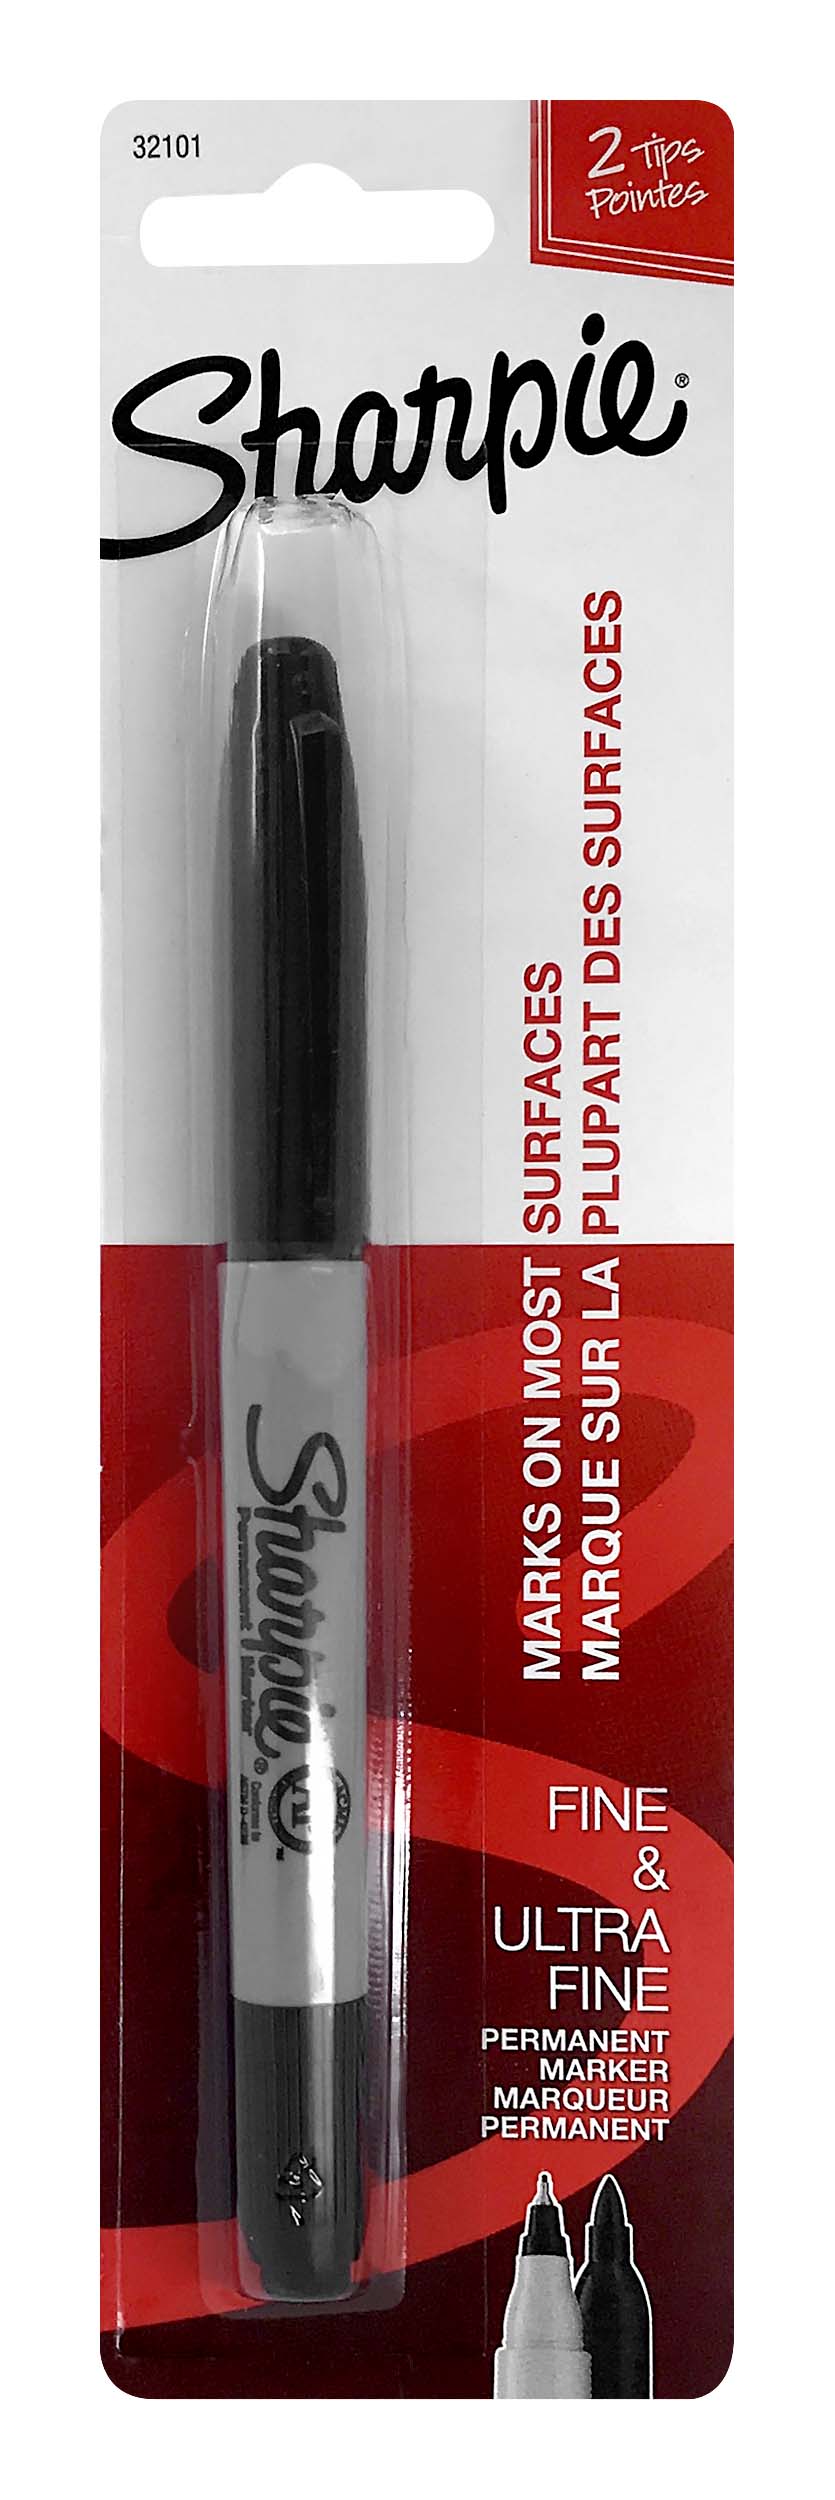 Sharpie Twin Tip Permanent Marker, Black (Sanford) – Alabama Art Supply